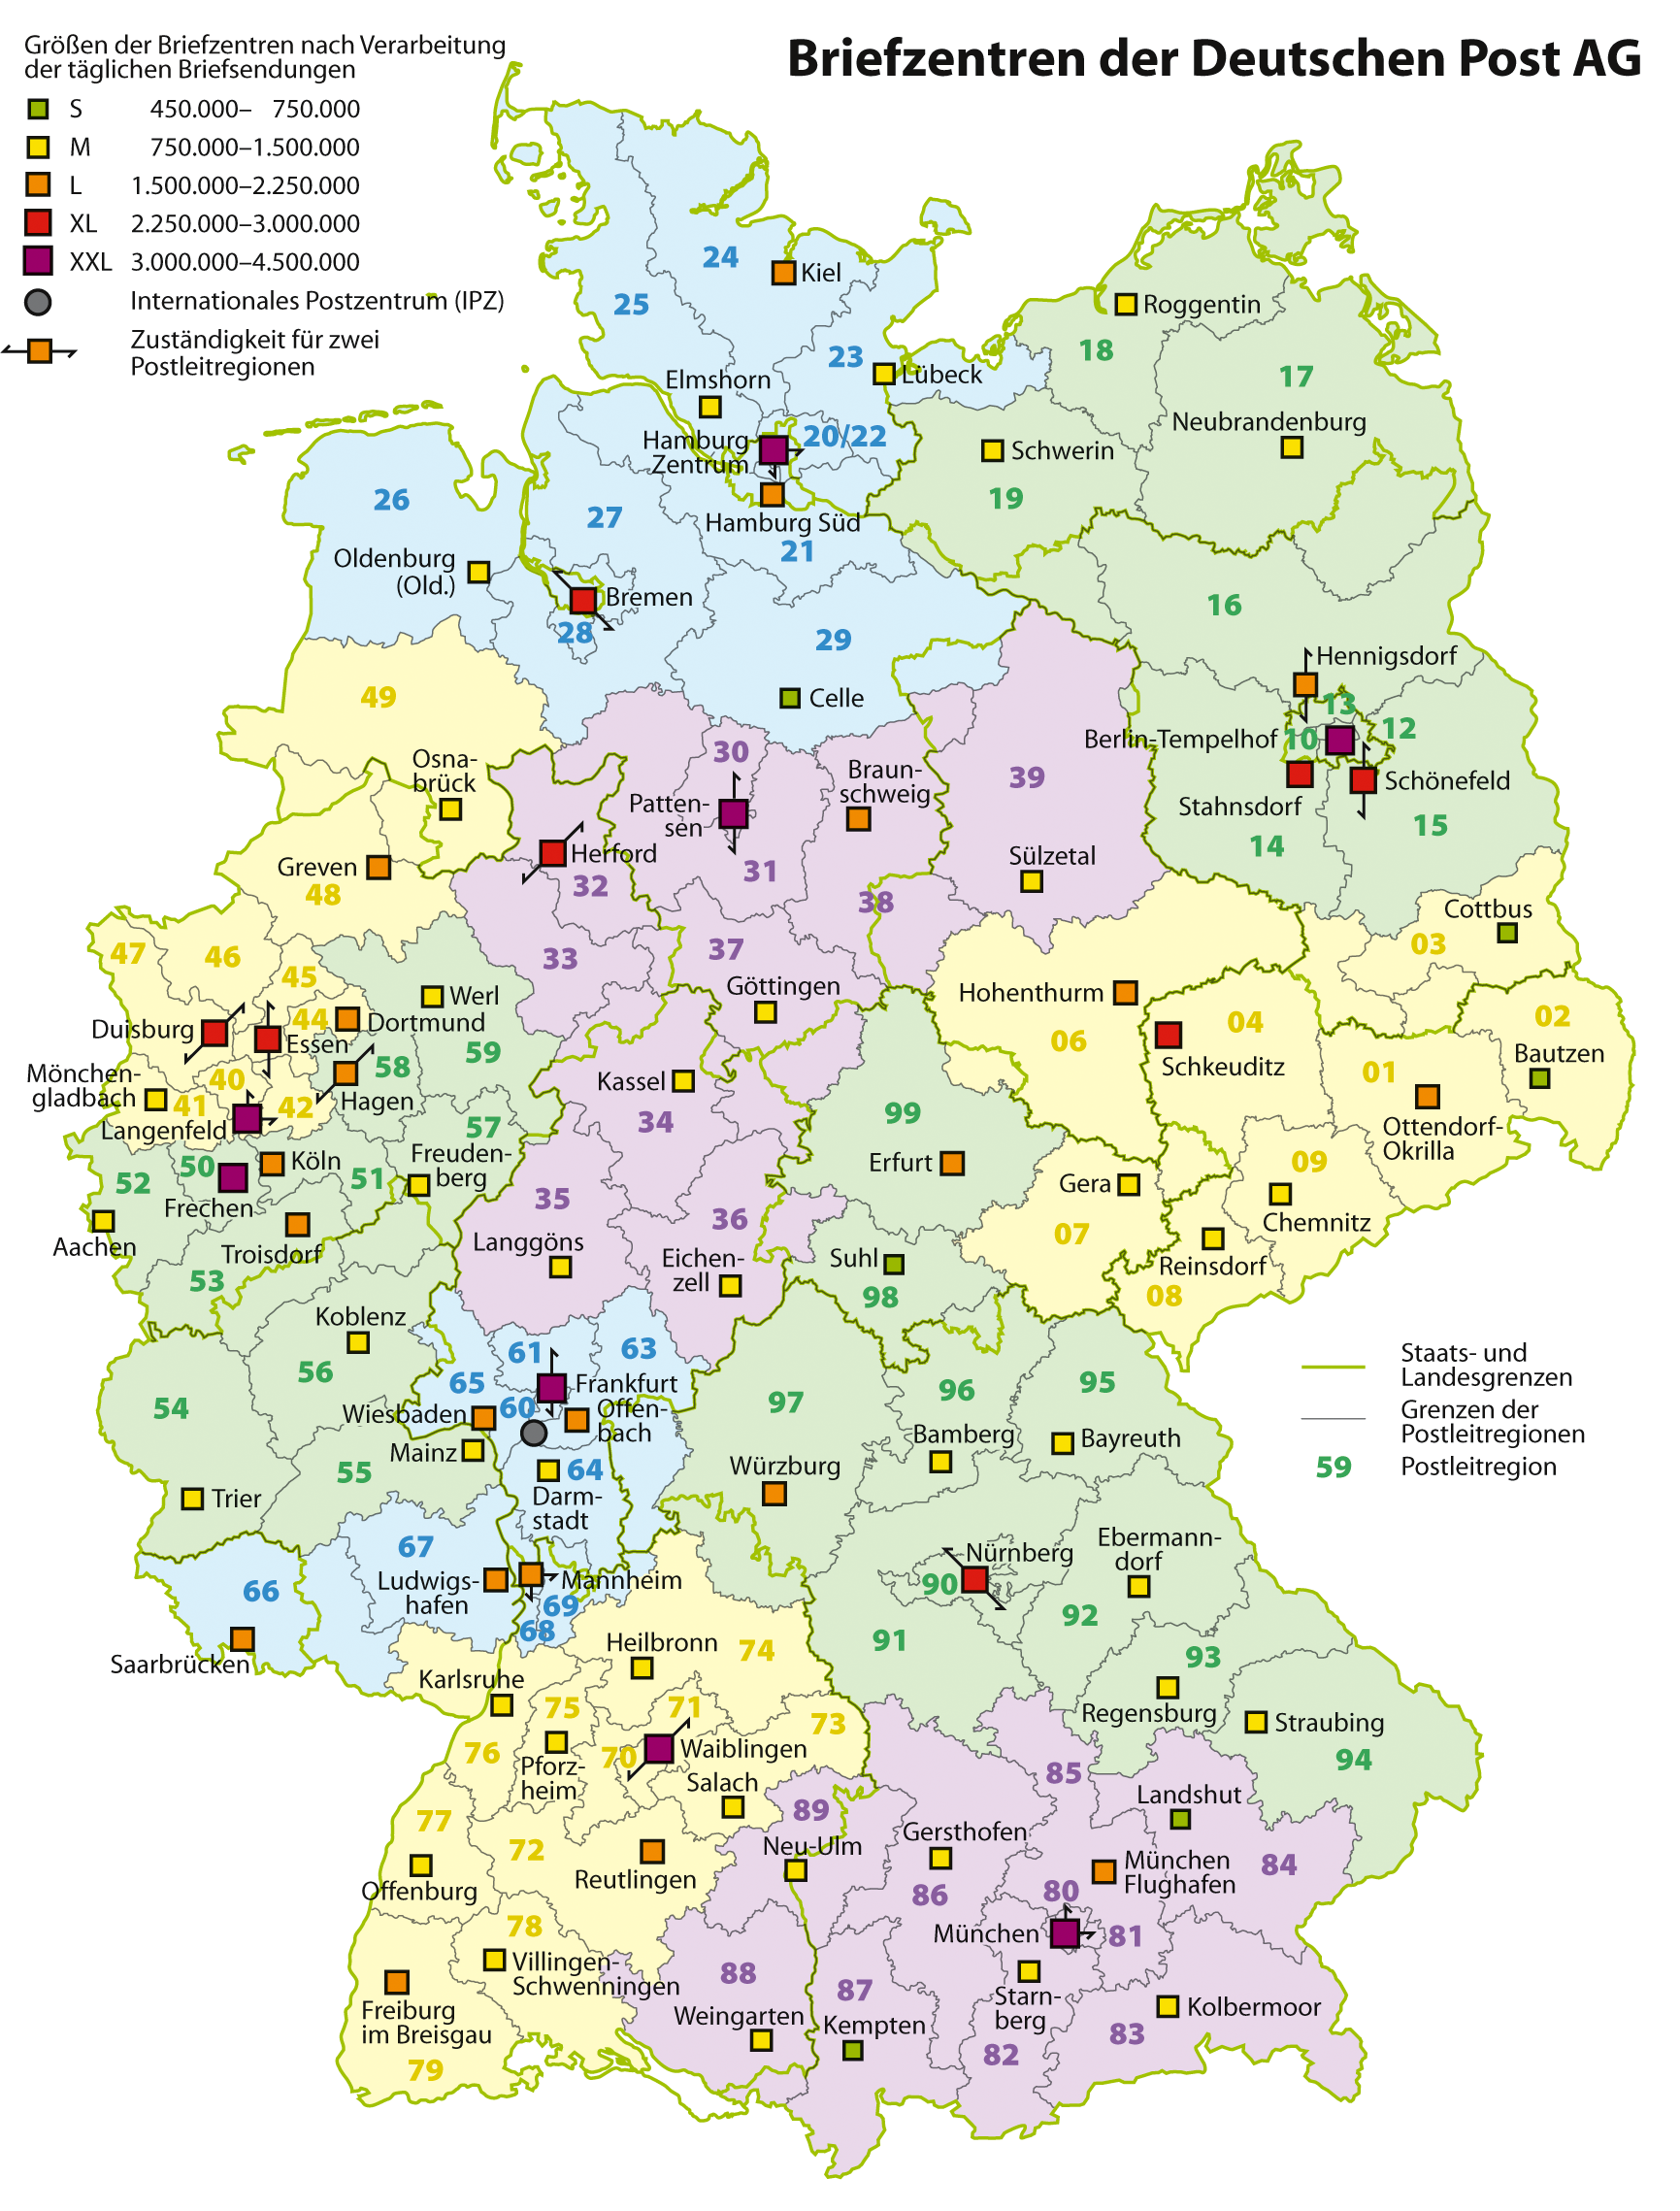 Karte_Briefzentren_Deutsche_Post_AG